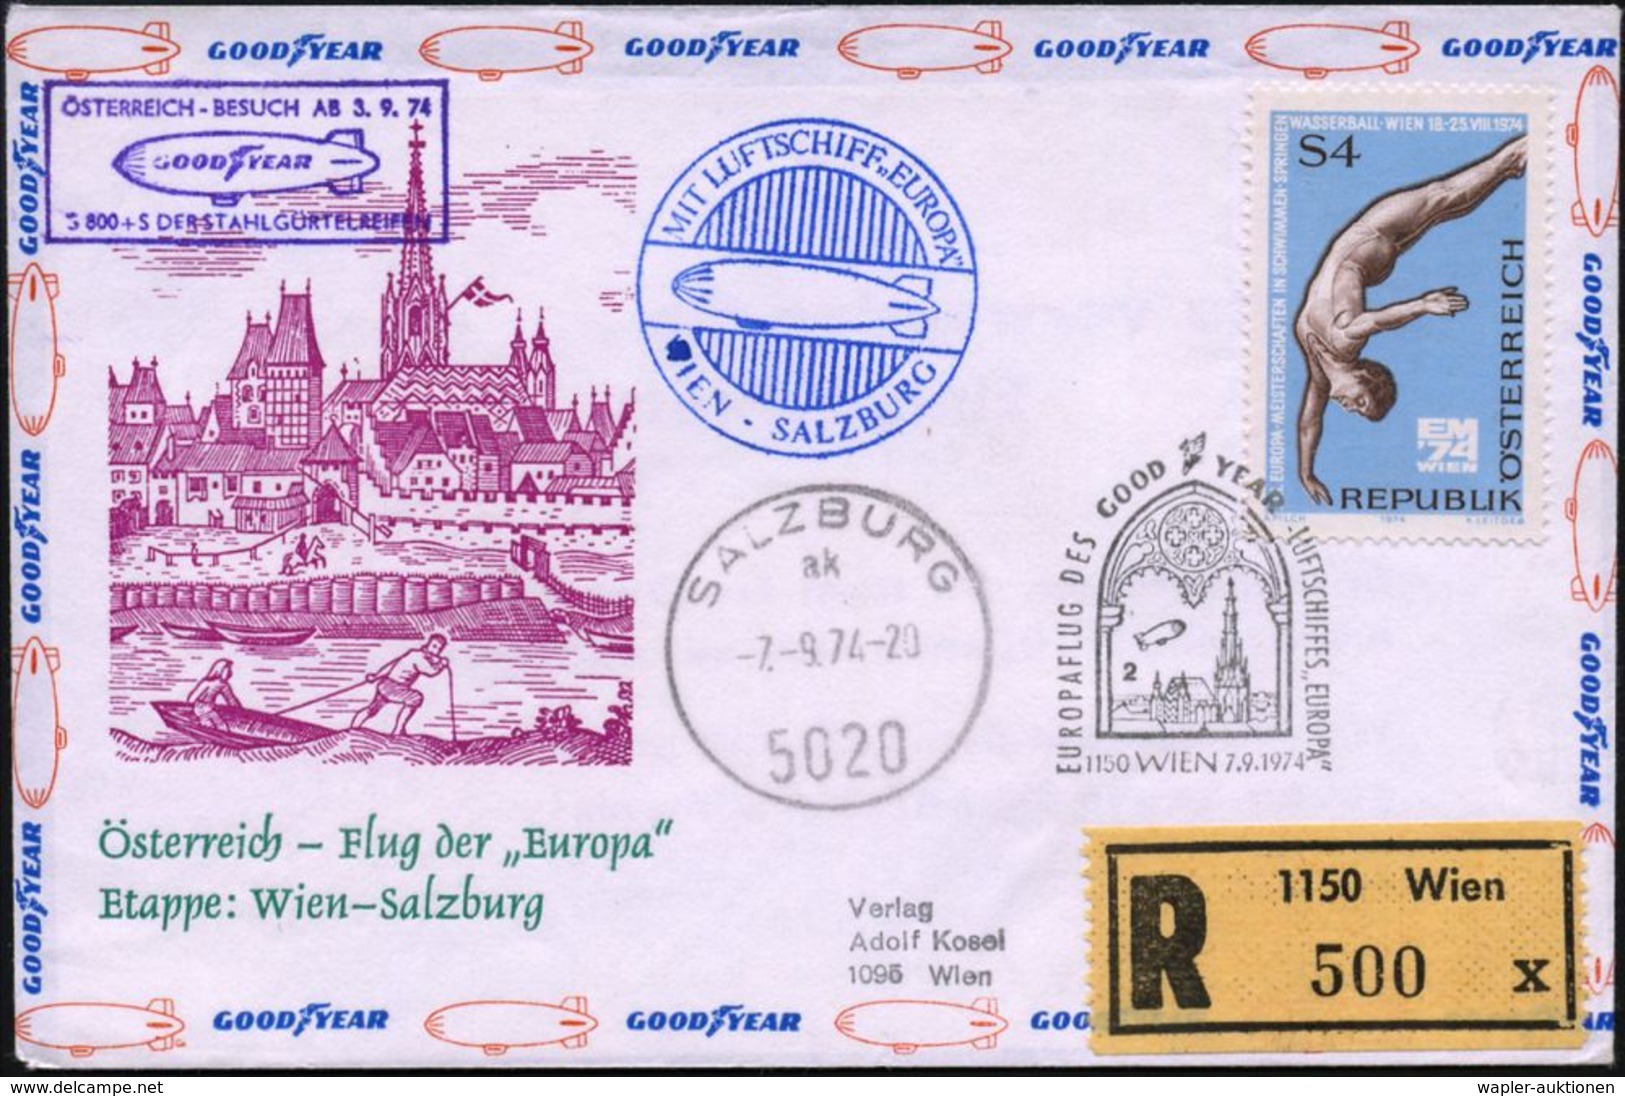 LUFTSCHIFFE (OHNE ZEPPELIN) : ÖSTERREICH 1974 (7.9.) SSt.: 1150 WIEN/EUROPAFLUG DES GOODYEAR-LUFTSCHIFFES "EUROPA" (Luft - Zeppelin